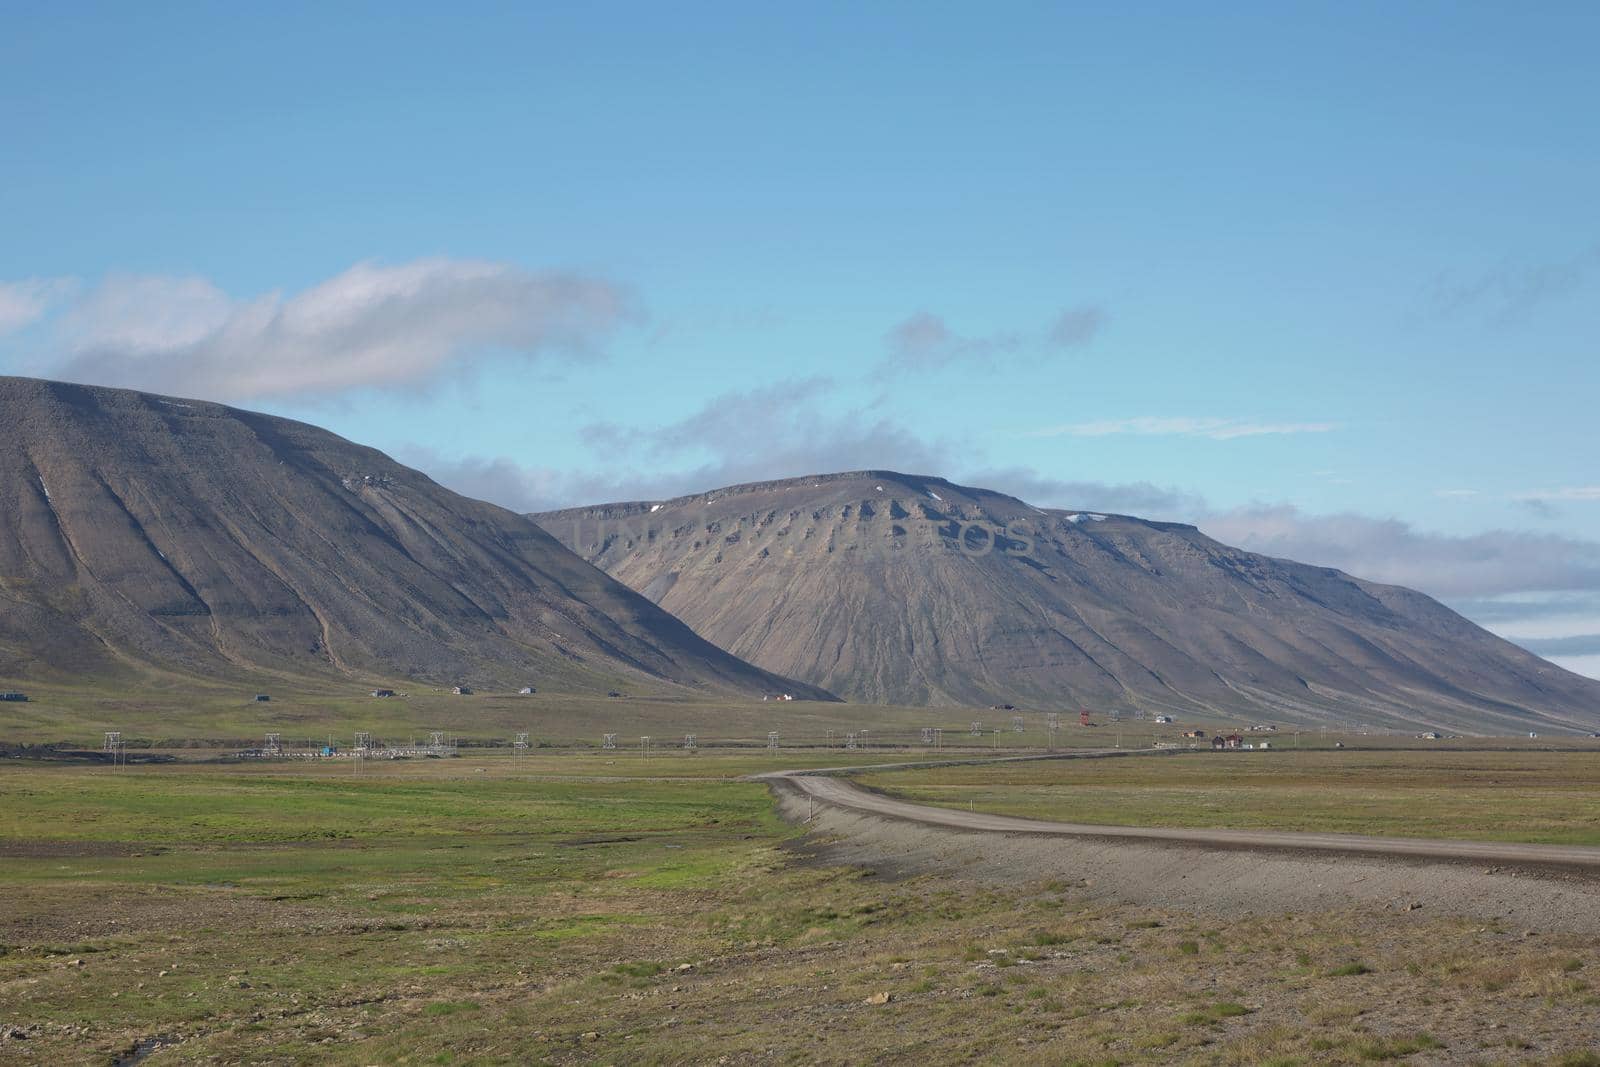 Beautiful nature and landscape near Longyearbyen, Spitsbergen  in Norway.